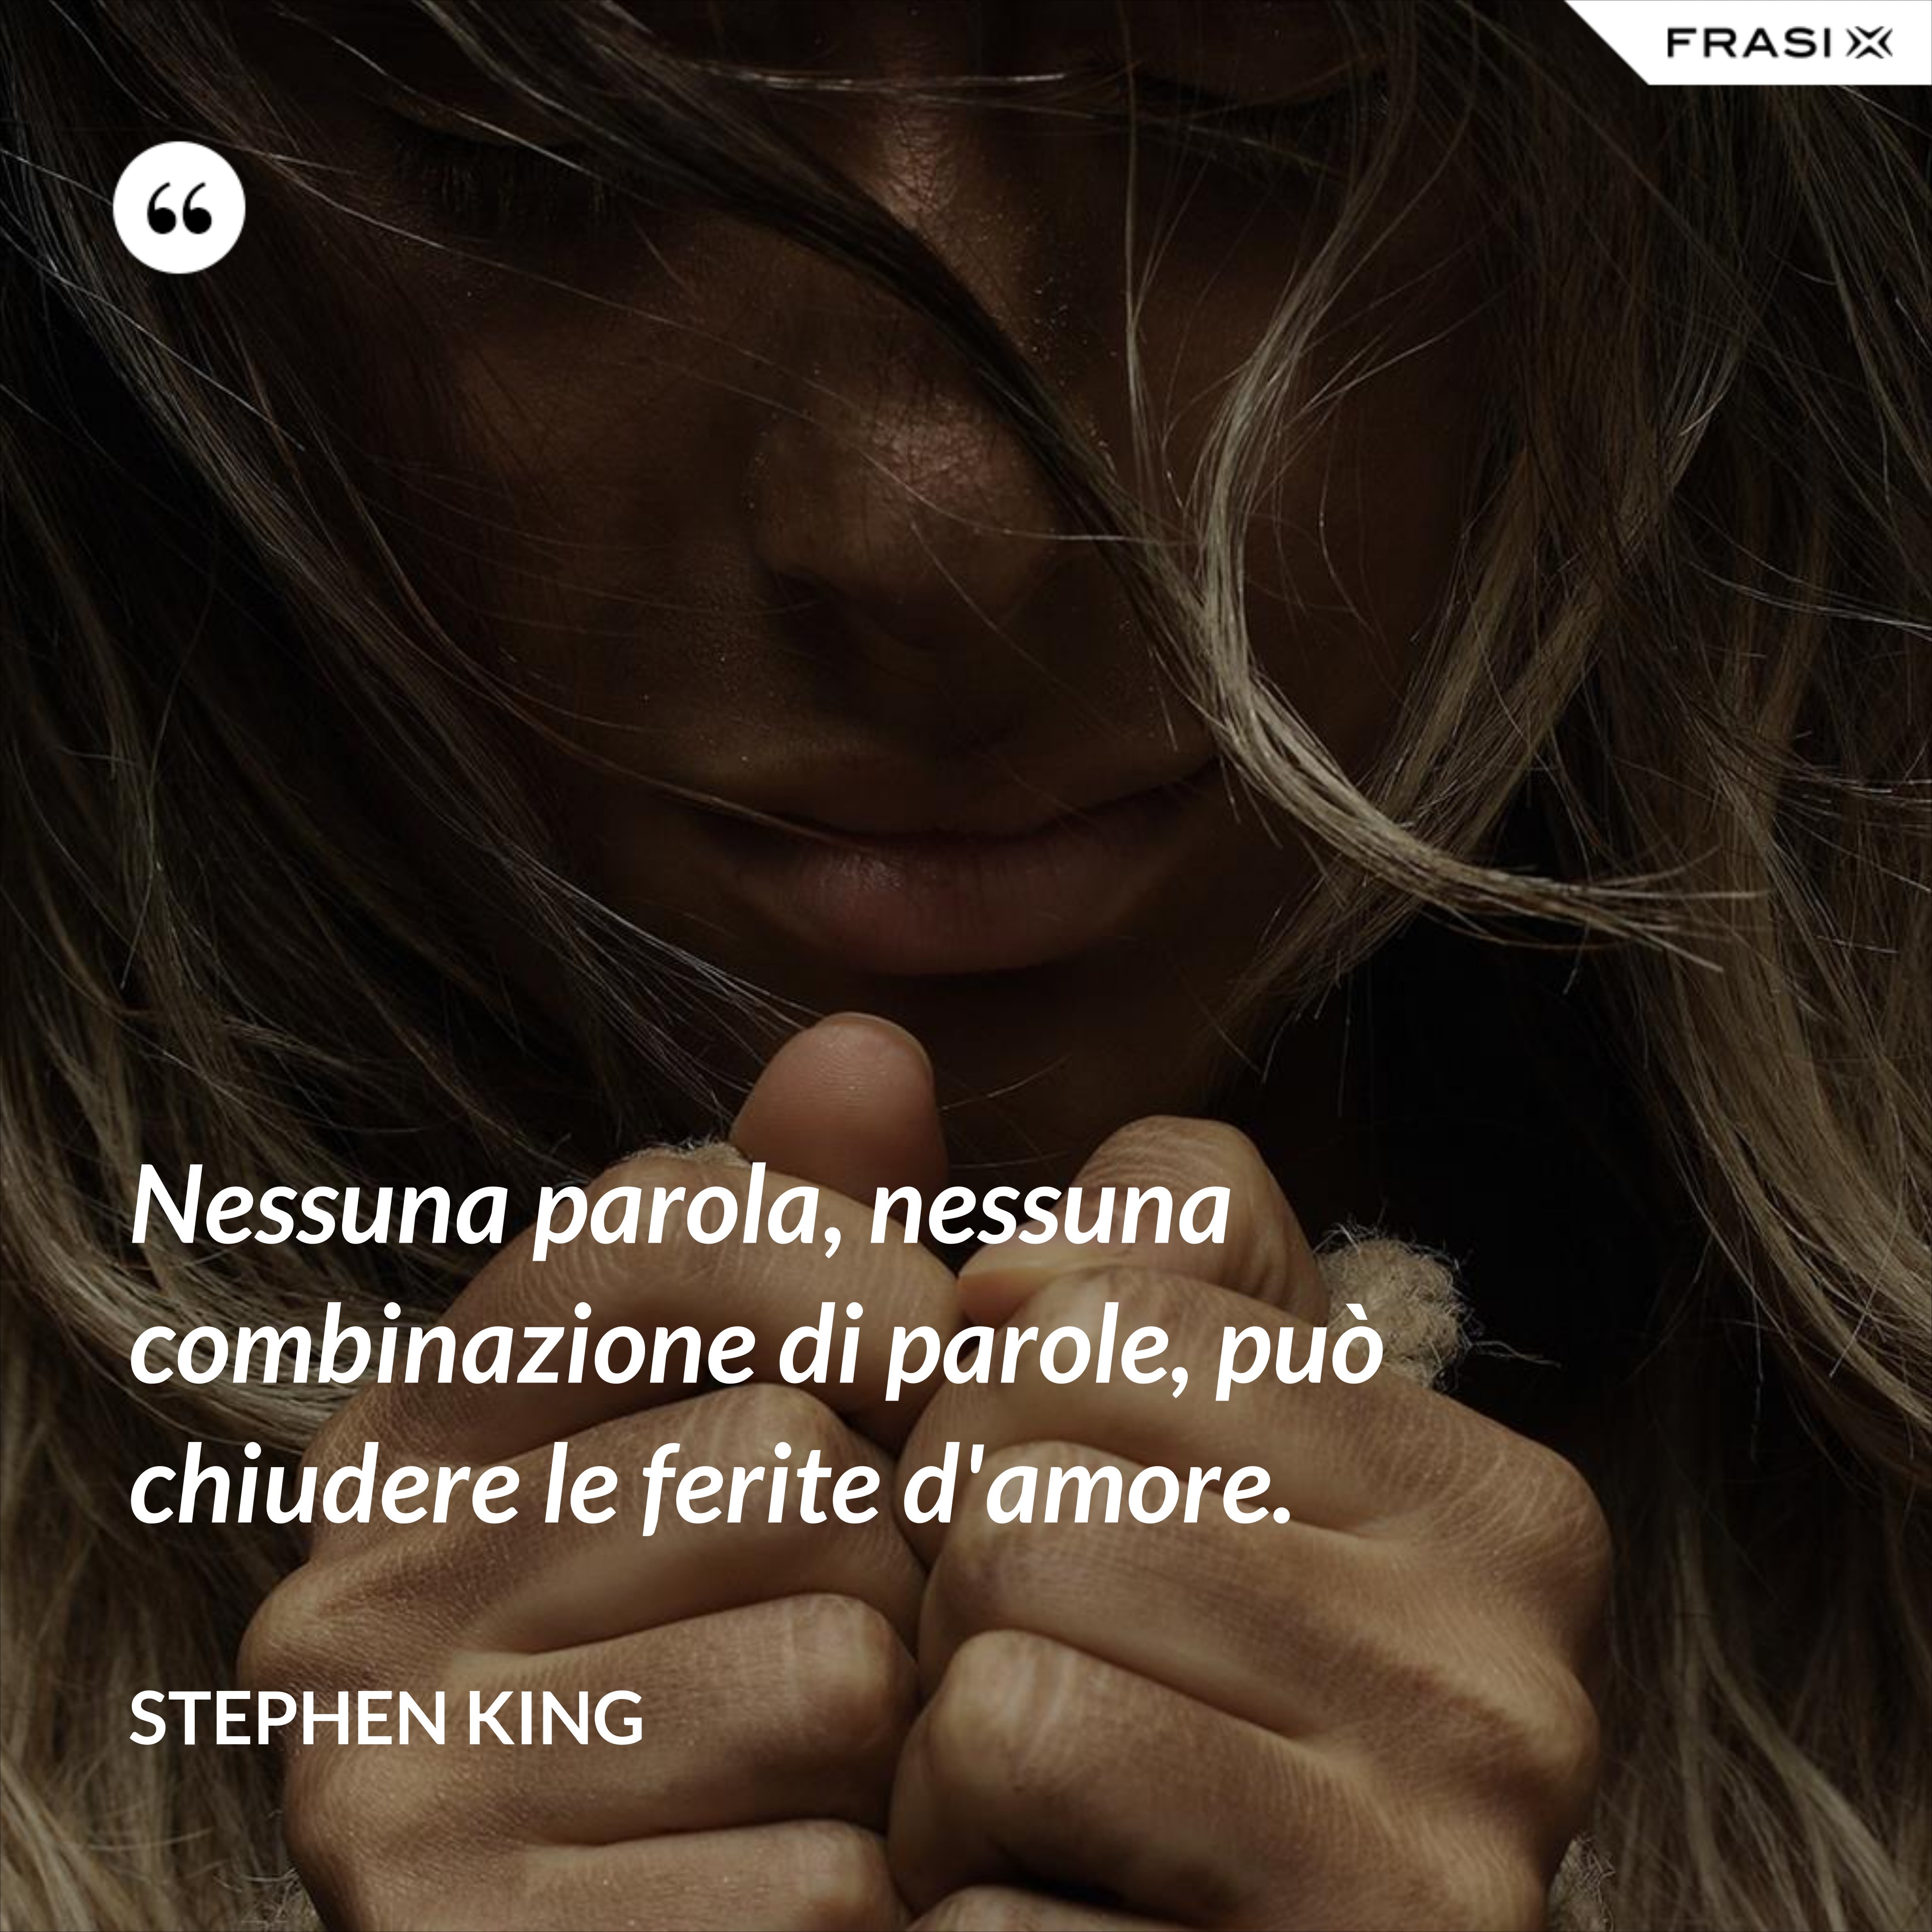 Nessuna parola, nessuna combinazione di parole, può chiudere le ferite d'amore. - Stephen King